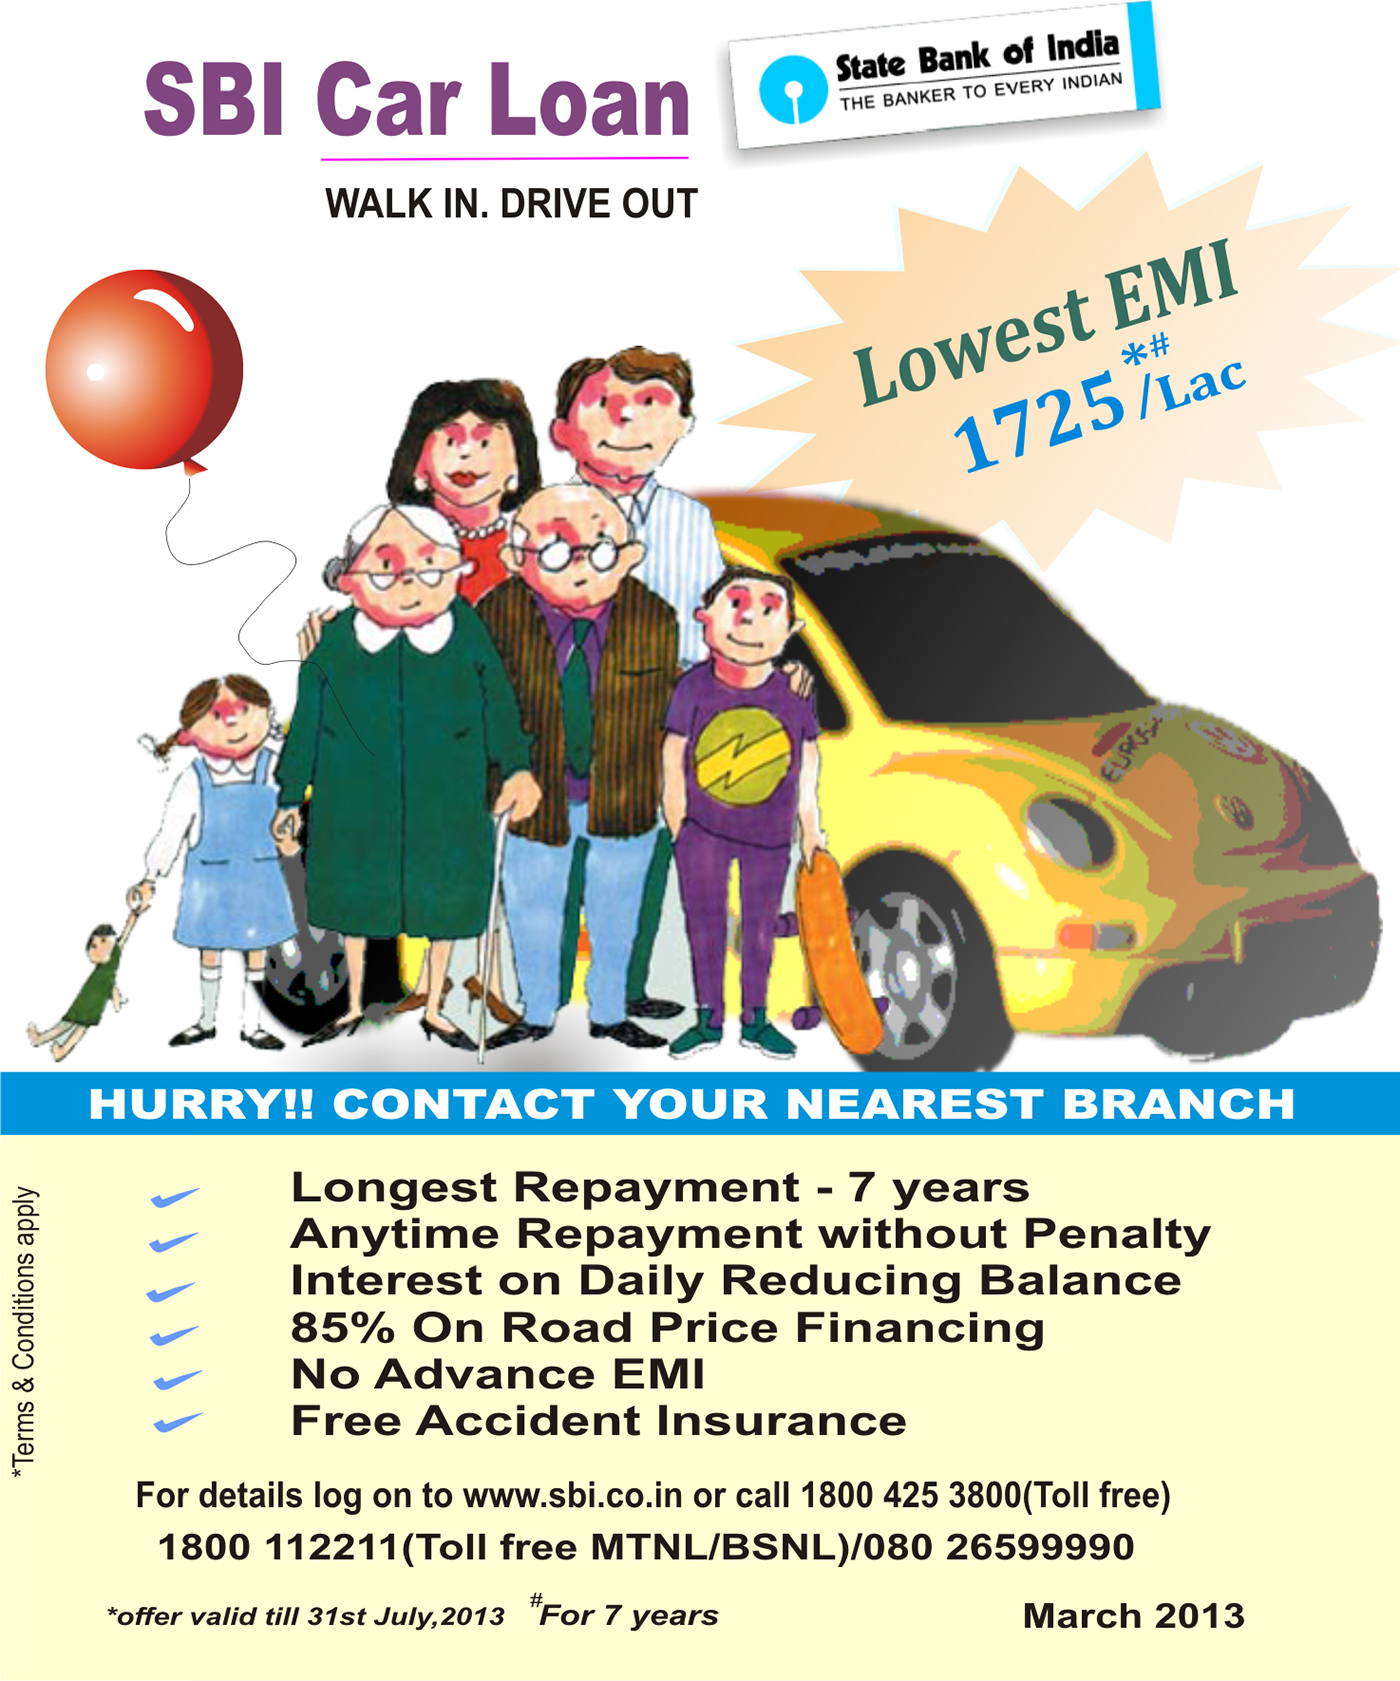 SBI car loan ads on Behance